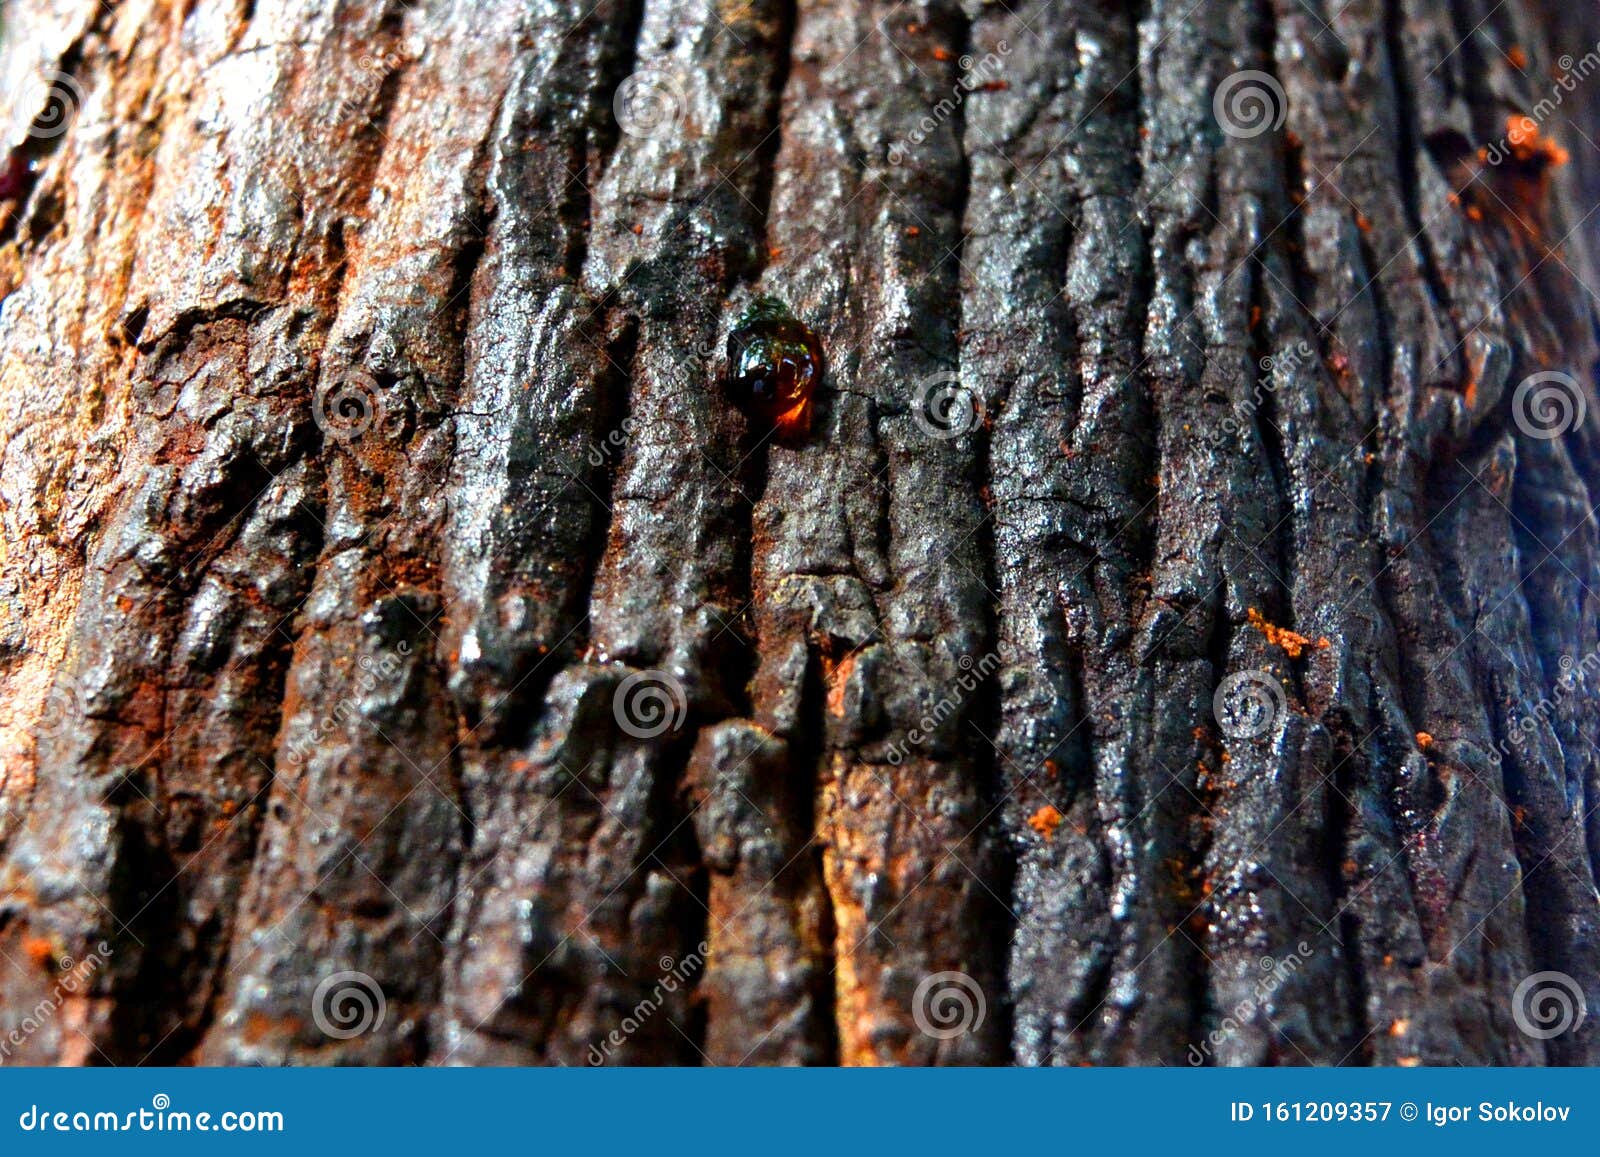 Une Goutte De Goudron De Bois Coule Dans L'écorce D'arbre Image stock -  Image du abstrait, colle: 161209357